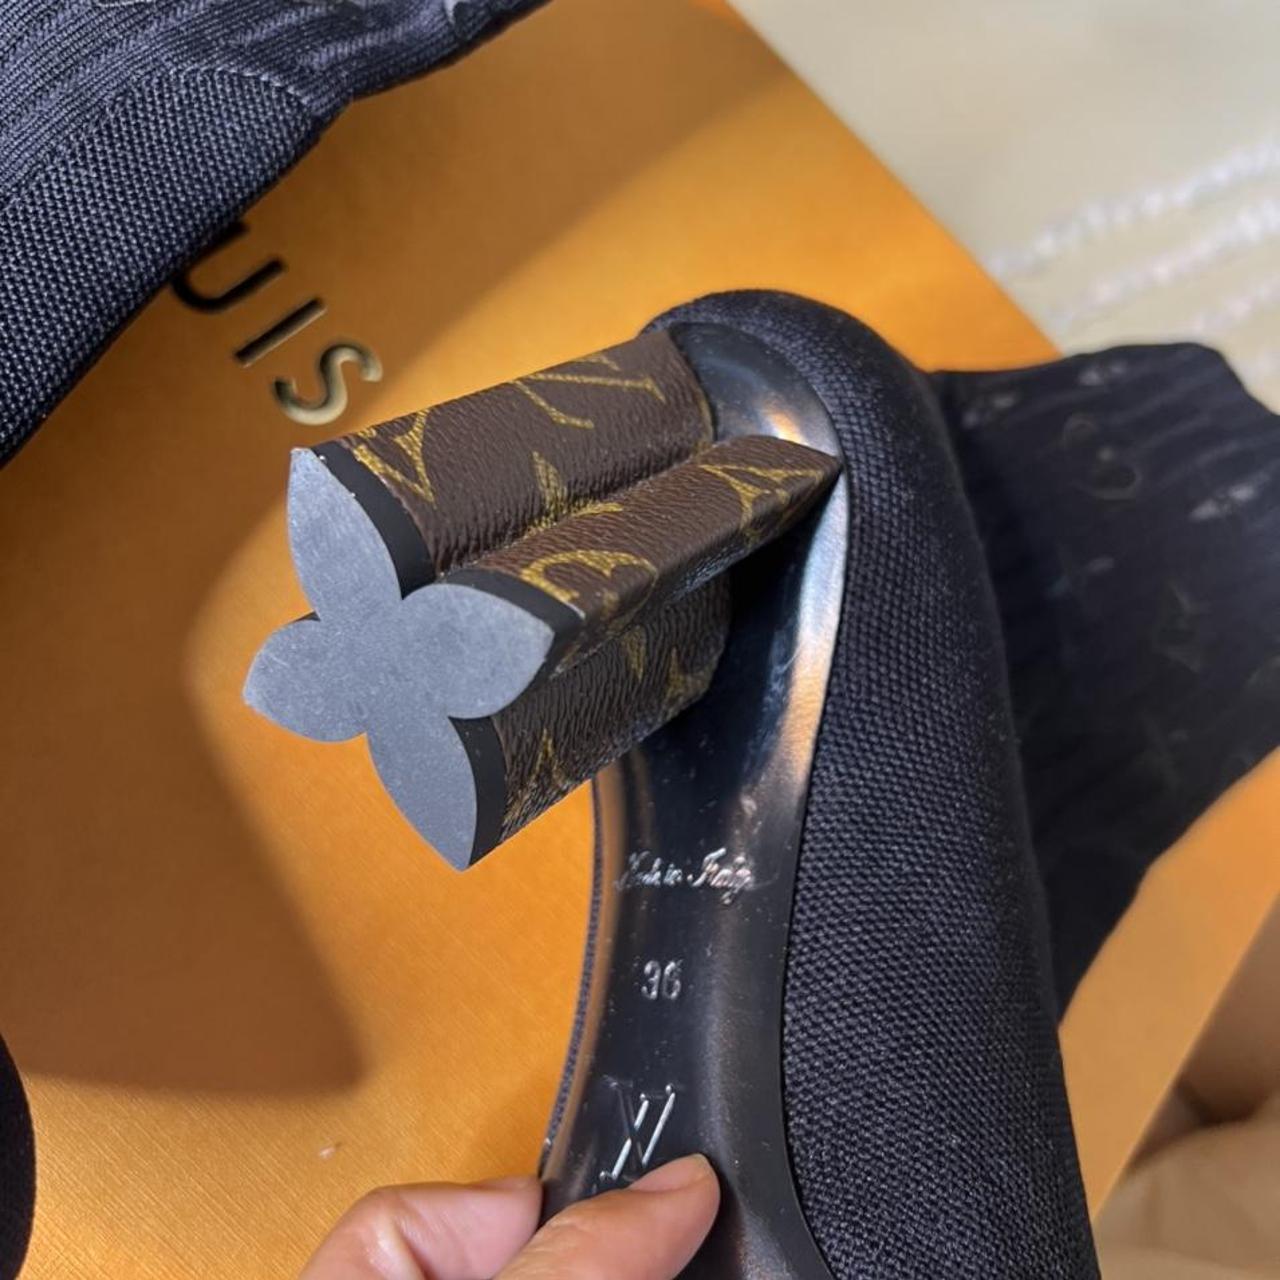 Louis Vuitton Sequin Silhouette Ankle Boot Sz. US - Depop